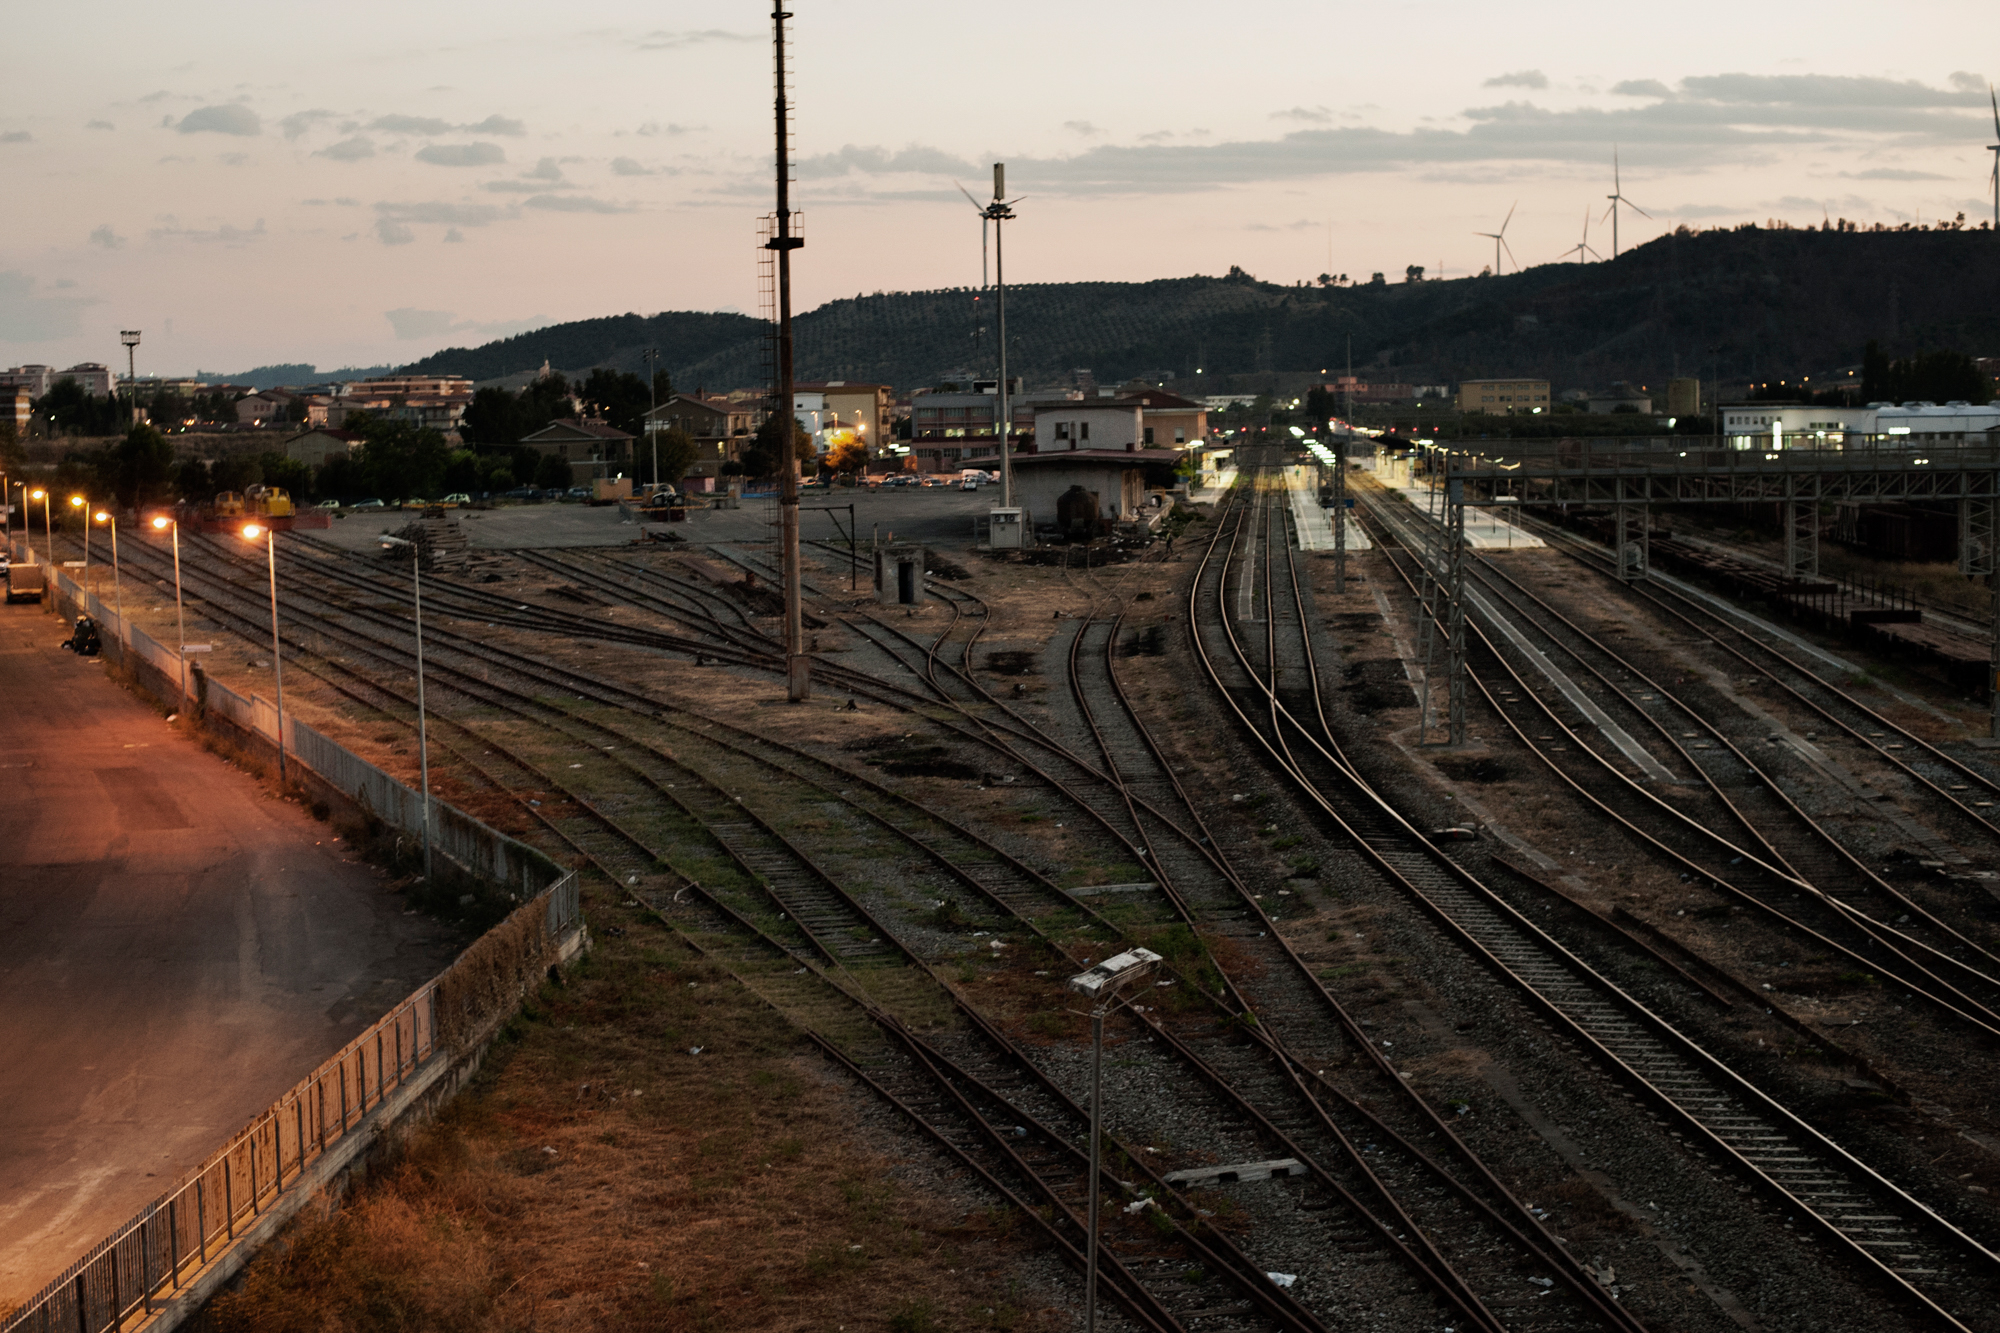  Italia. Crotone 2013: La stazione ferroviaria costruita per le necessita di una città industriale è ora quasi del tutto inutilizzata e se ne prevede lo smantellamento nei prossimi anni.&nbsp; 